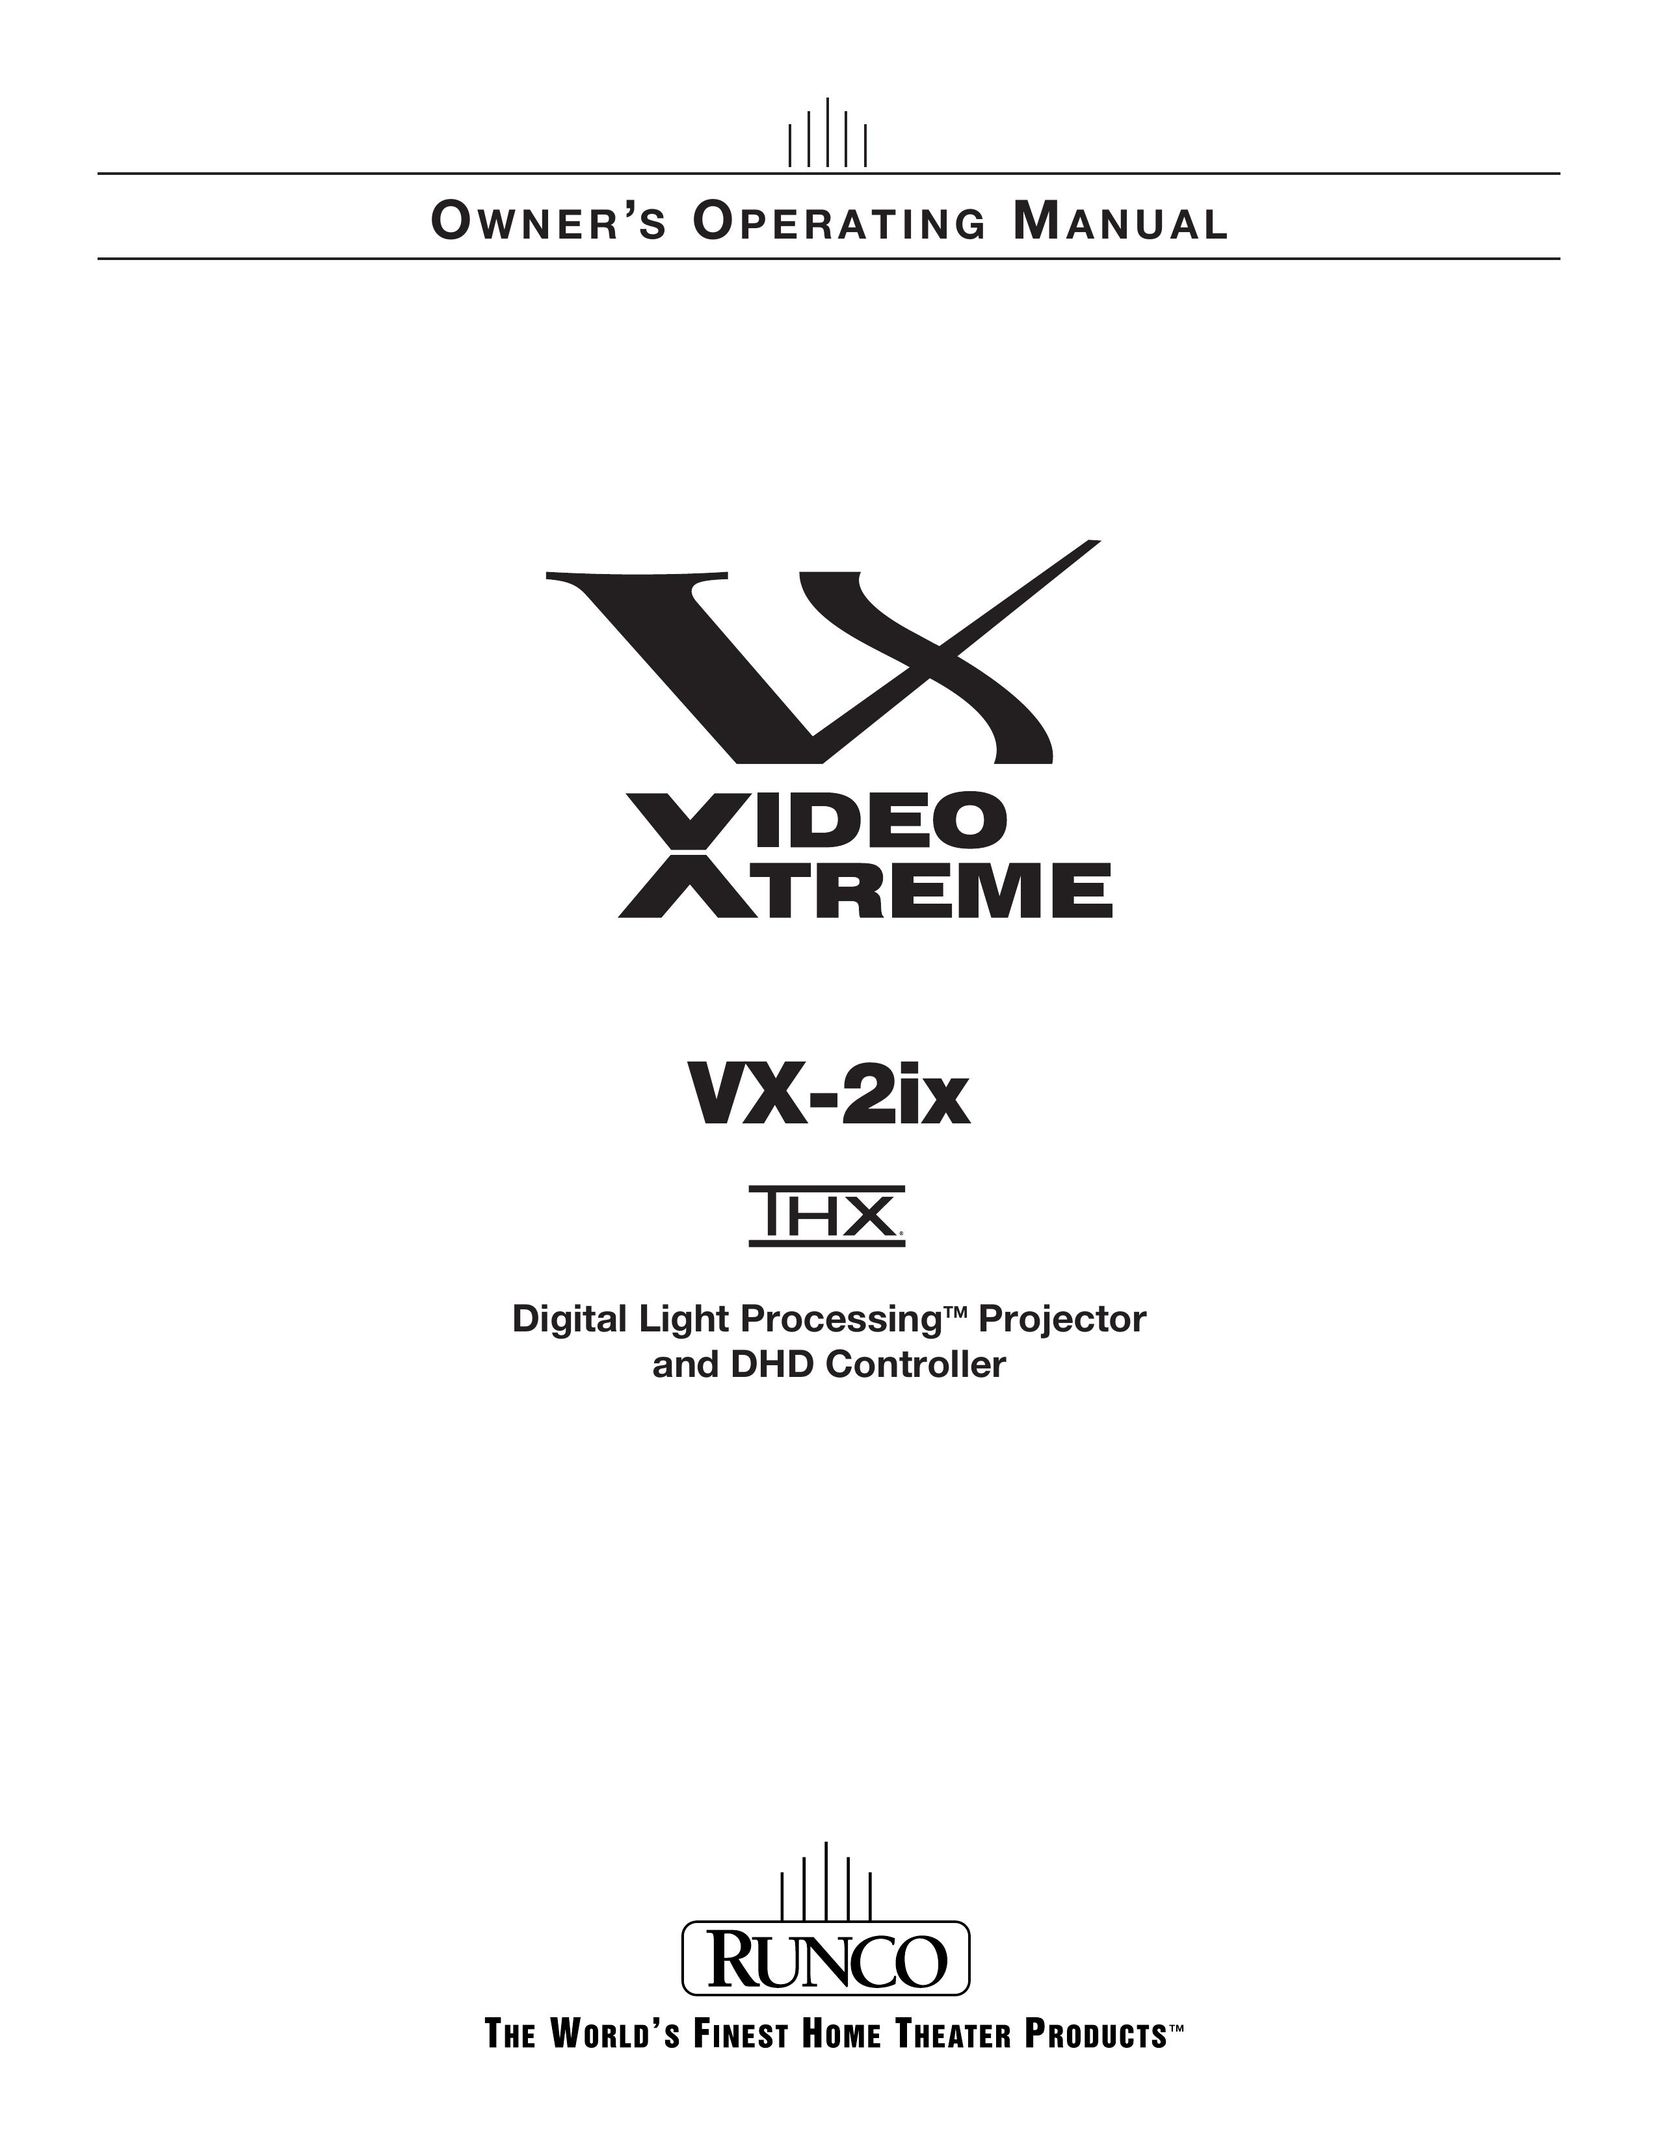 Runco VX-2IX Projector User Manual